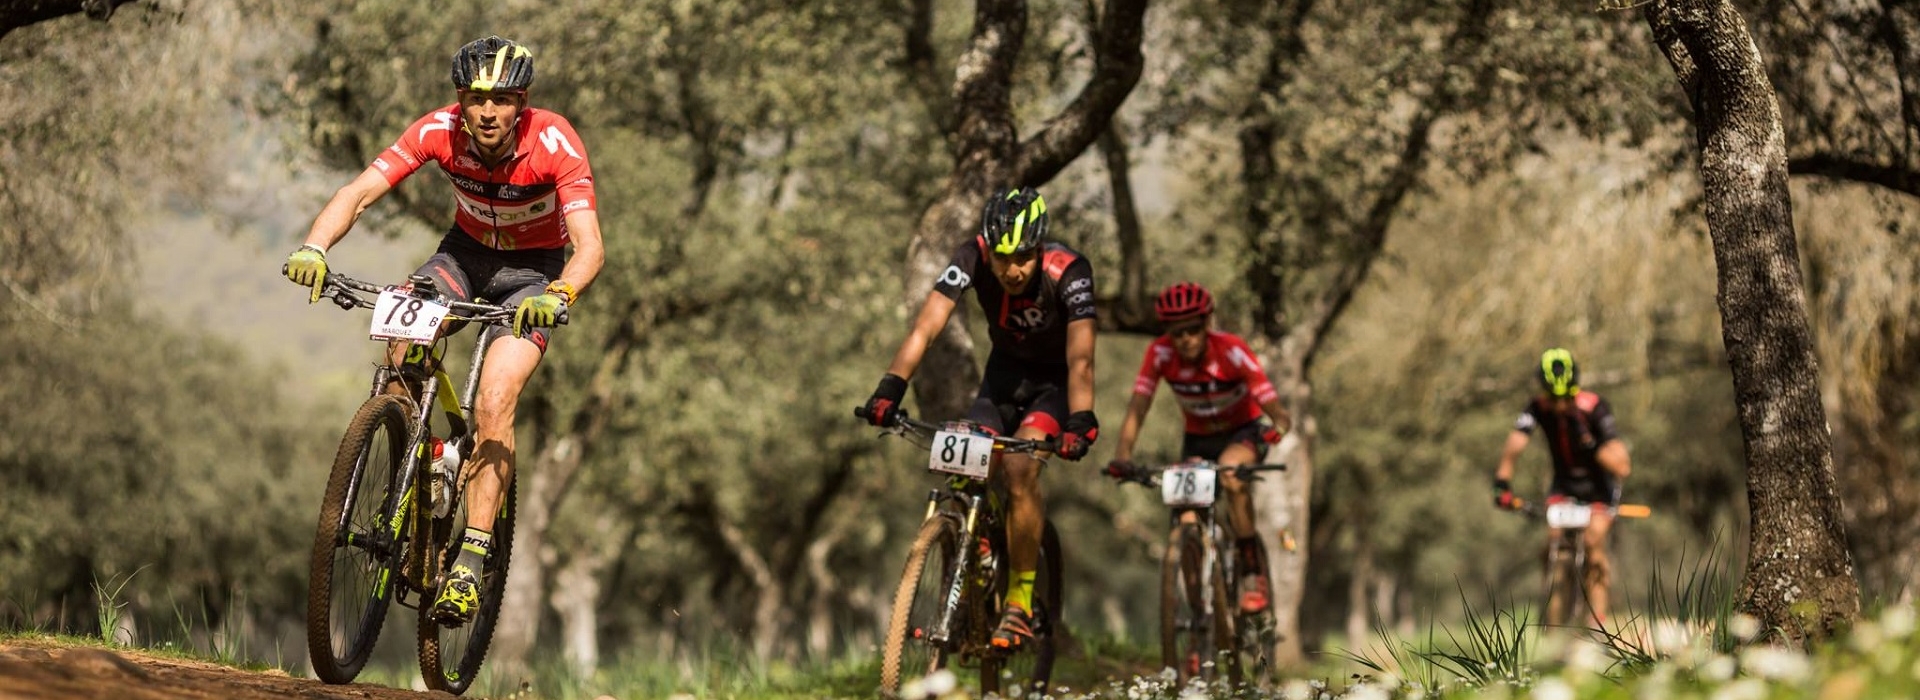 Jaén will host the start of Andalucía Bike Race presented by Caja Rural Jaén